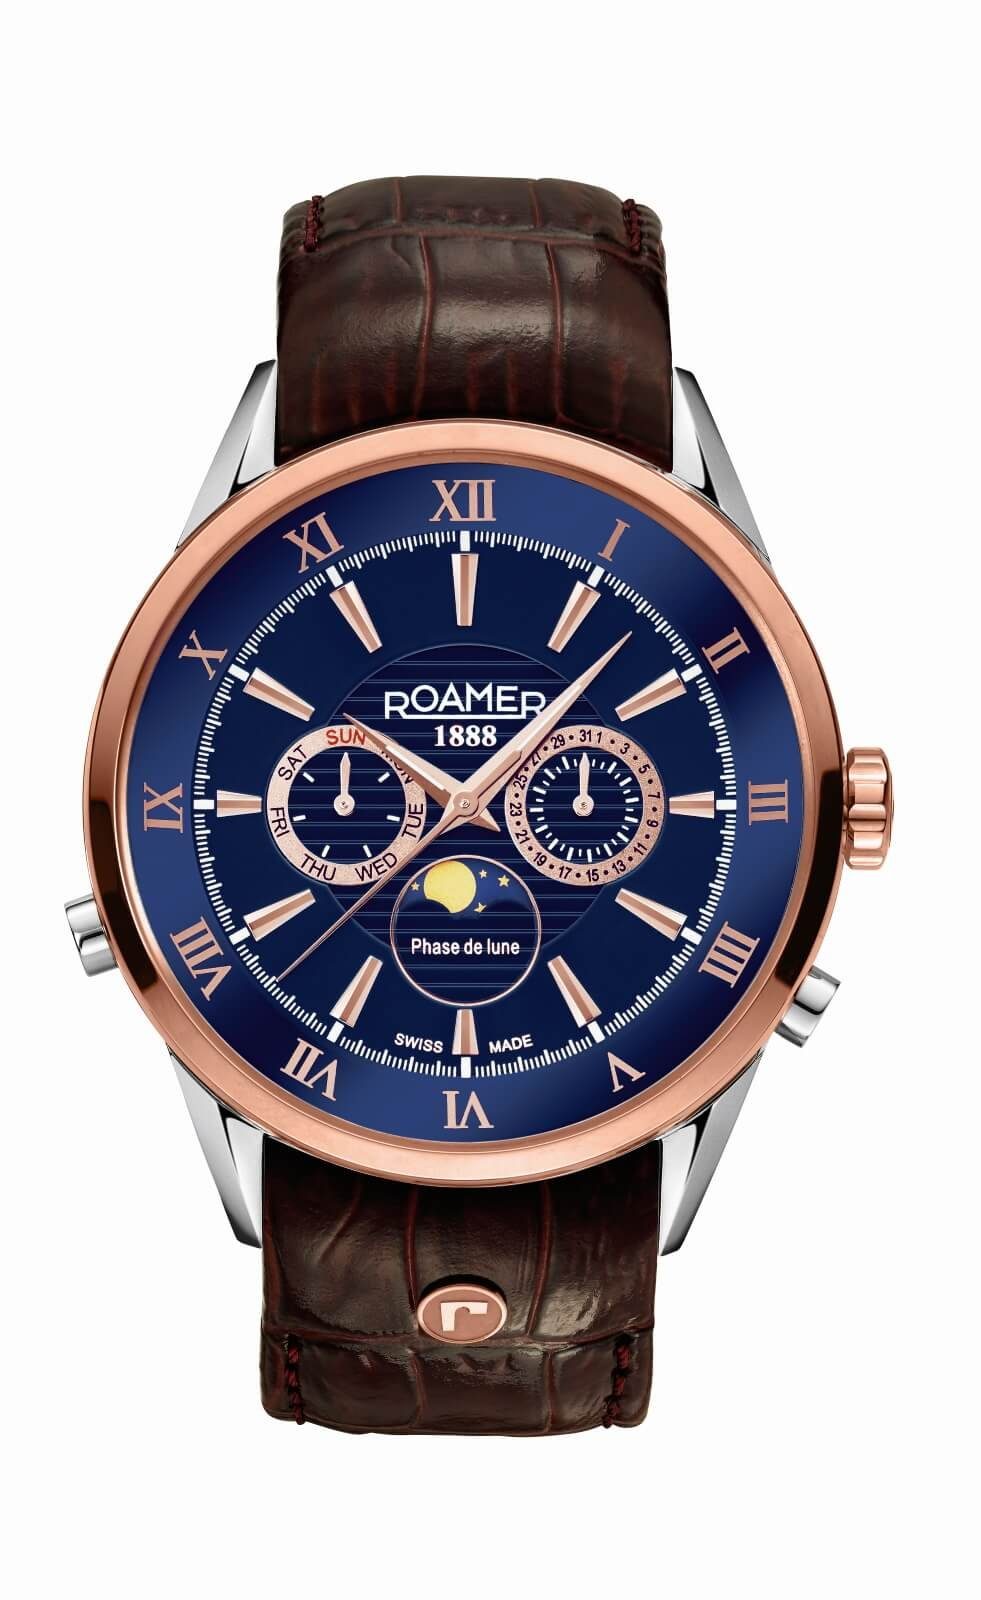 Herren Uhren Roamer Schweizer Uhr Superior Moonphase 508821 49 43 05, Mondphase